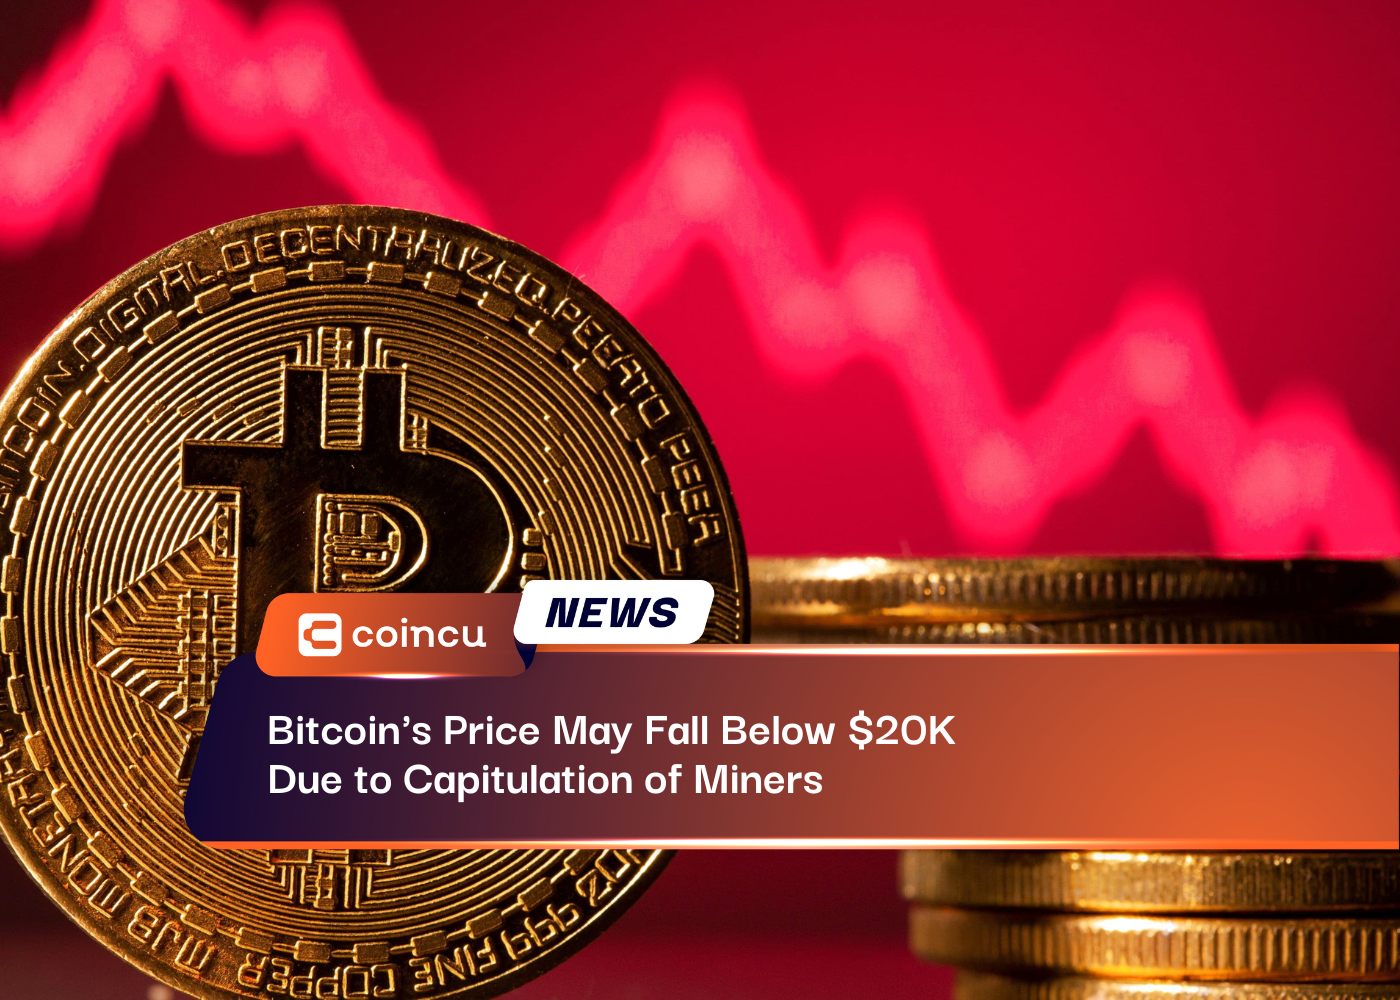 Le prix du Bitcoin pourrait tomber en dessous de 20 XNUMX $ en raison de la capitulation des mineurs